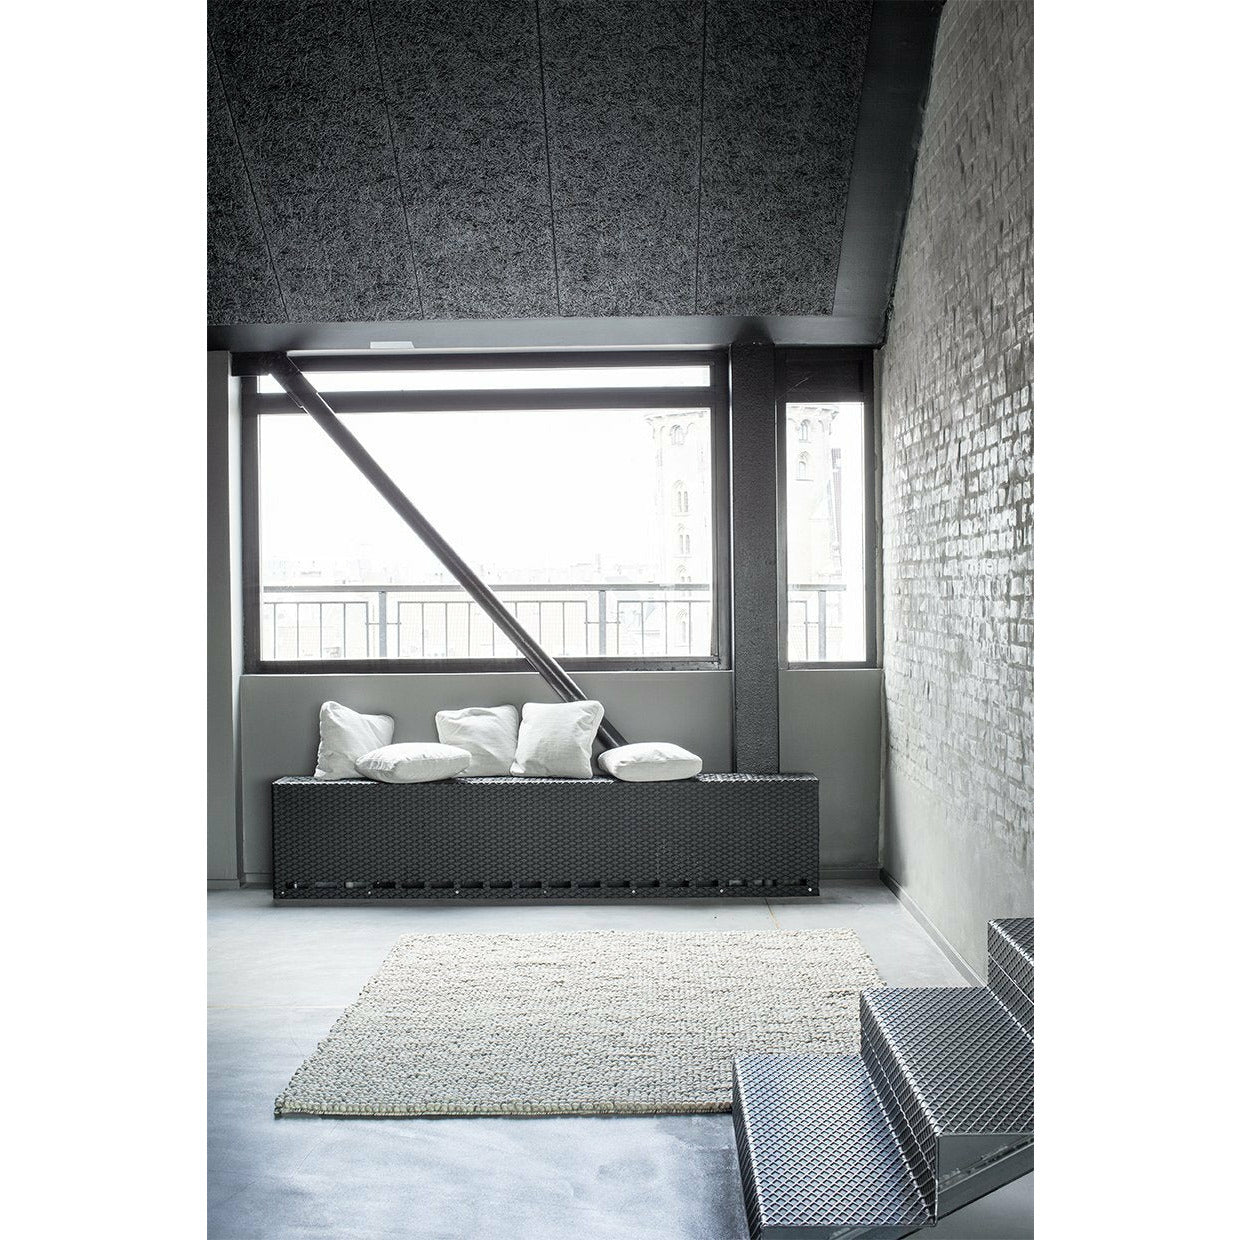 Massimo Bubbles Teppich Gemischt Grau, 170x240 Cm